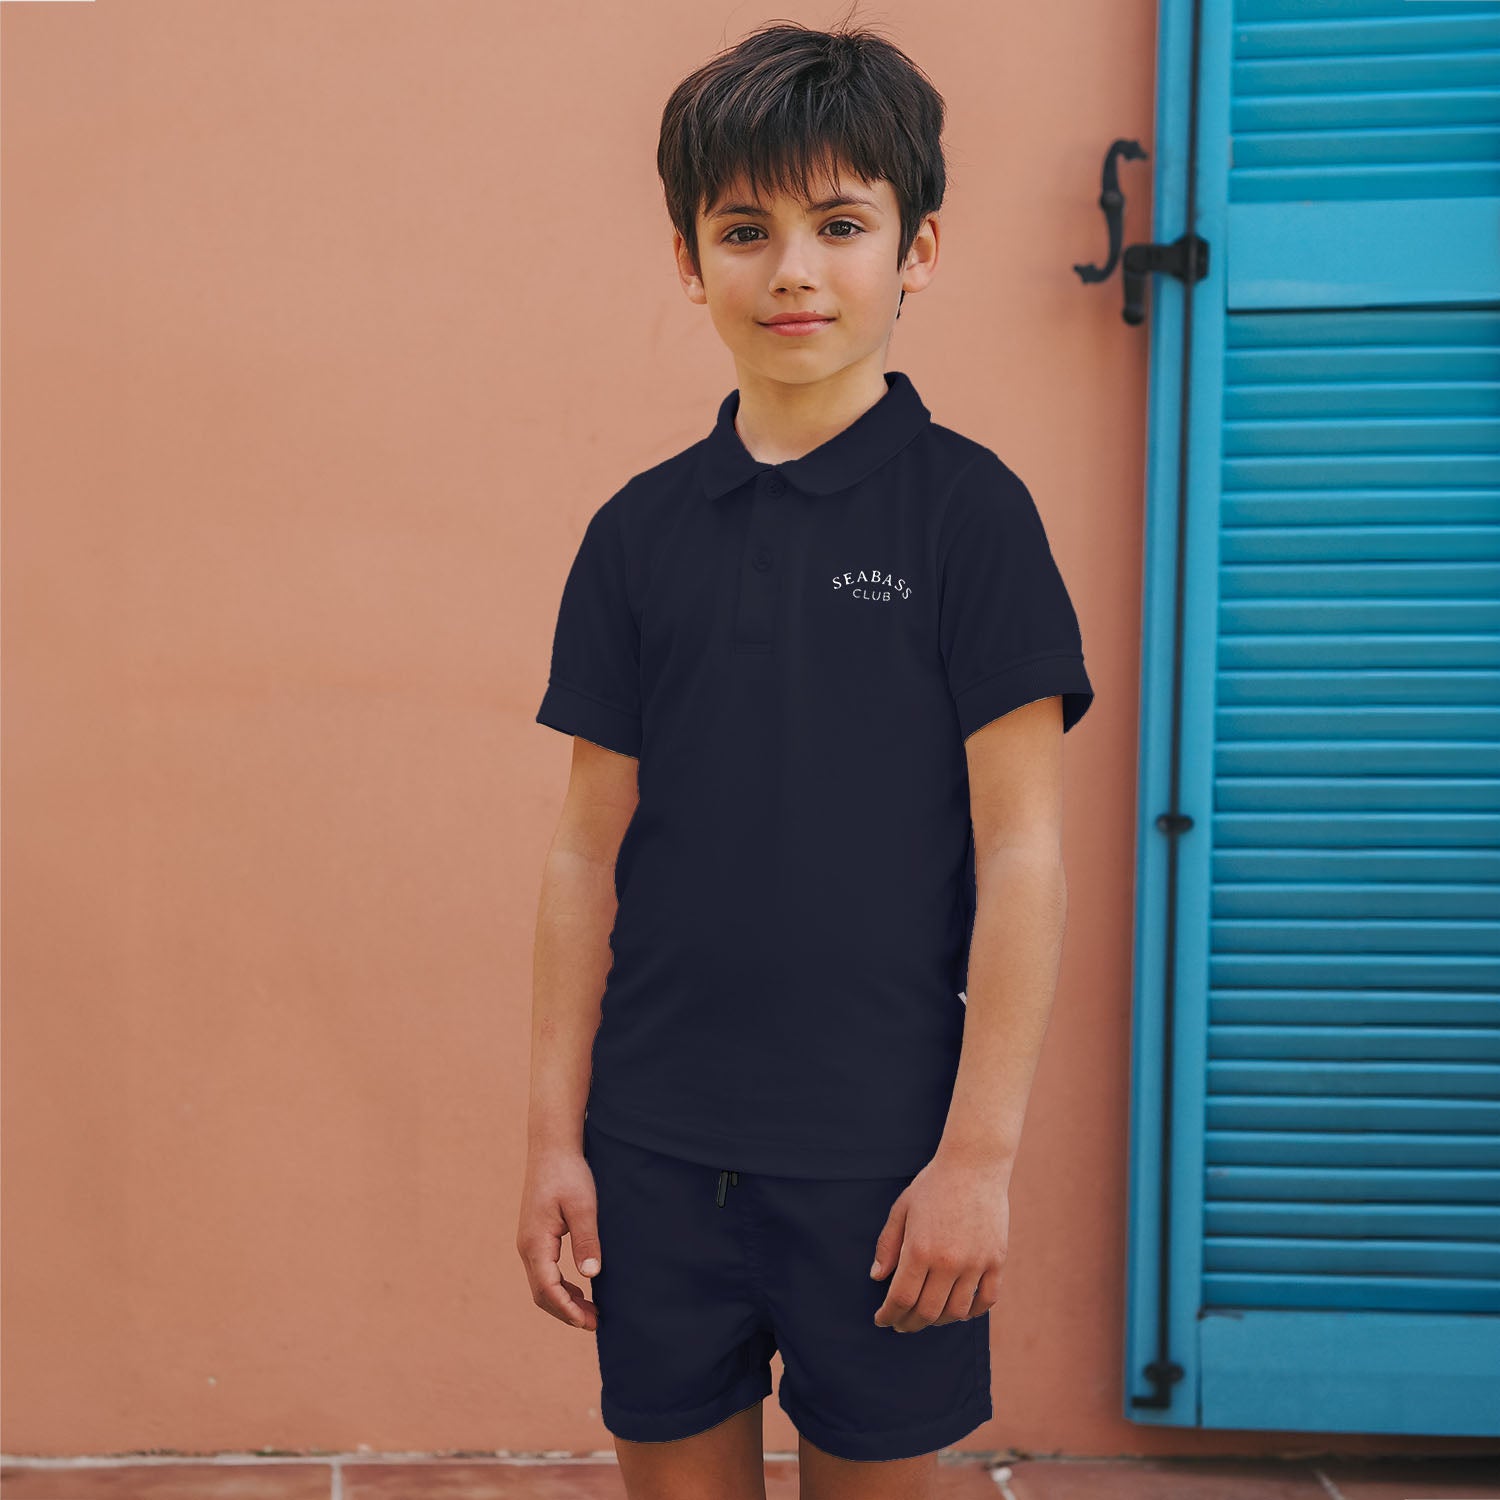 UV Swim Set - Short and Polo Navy